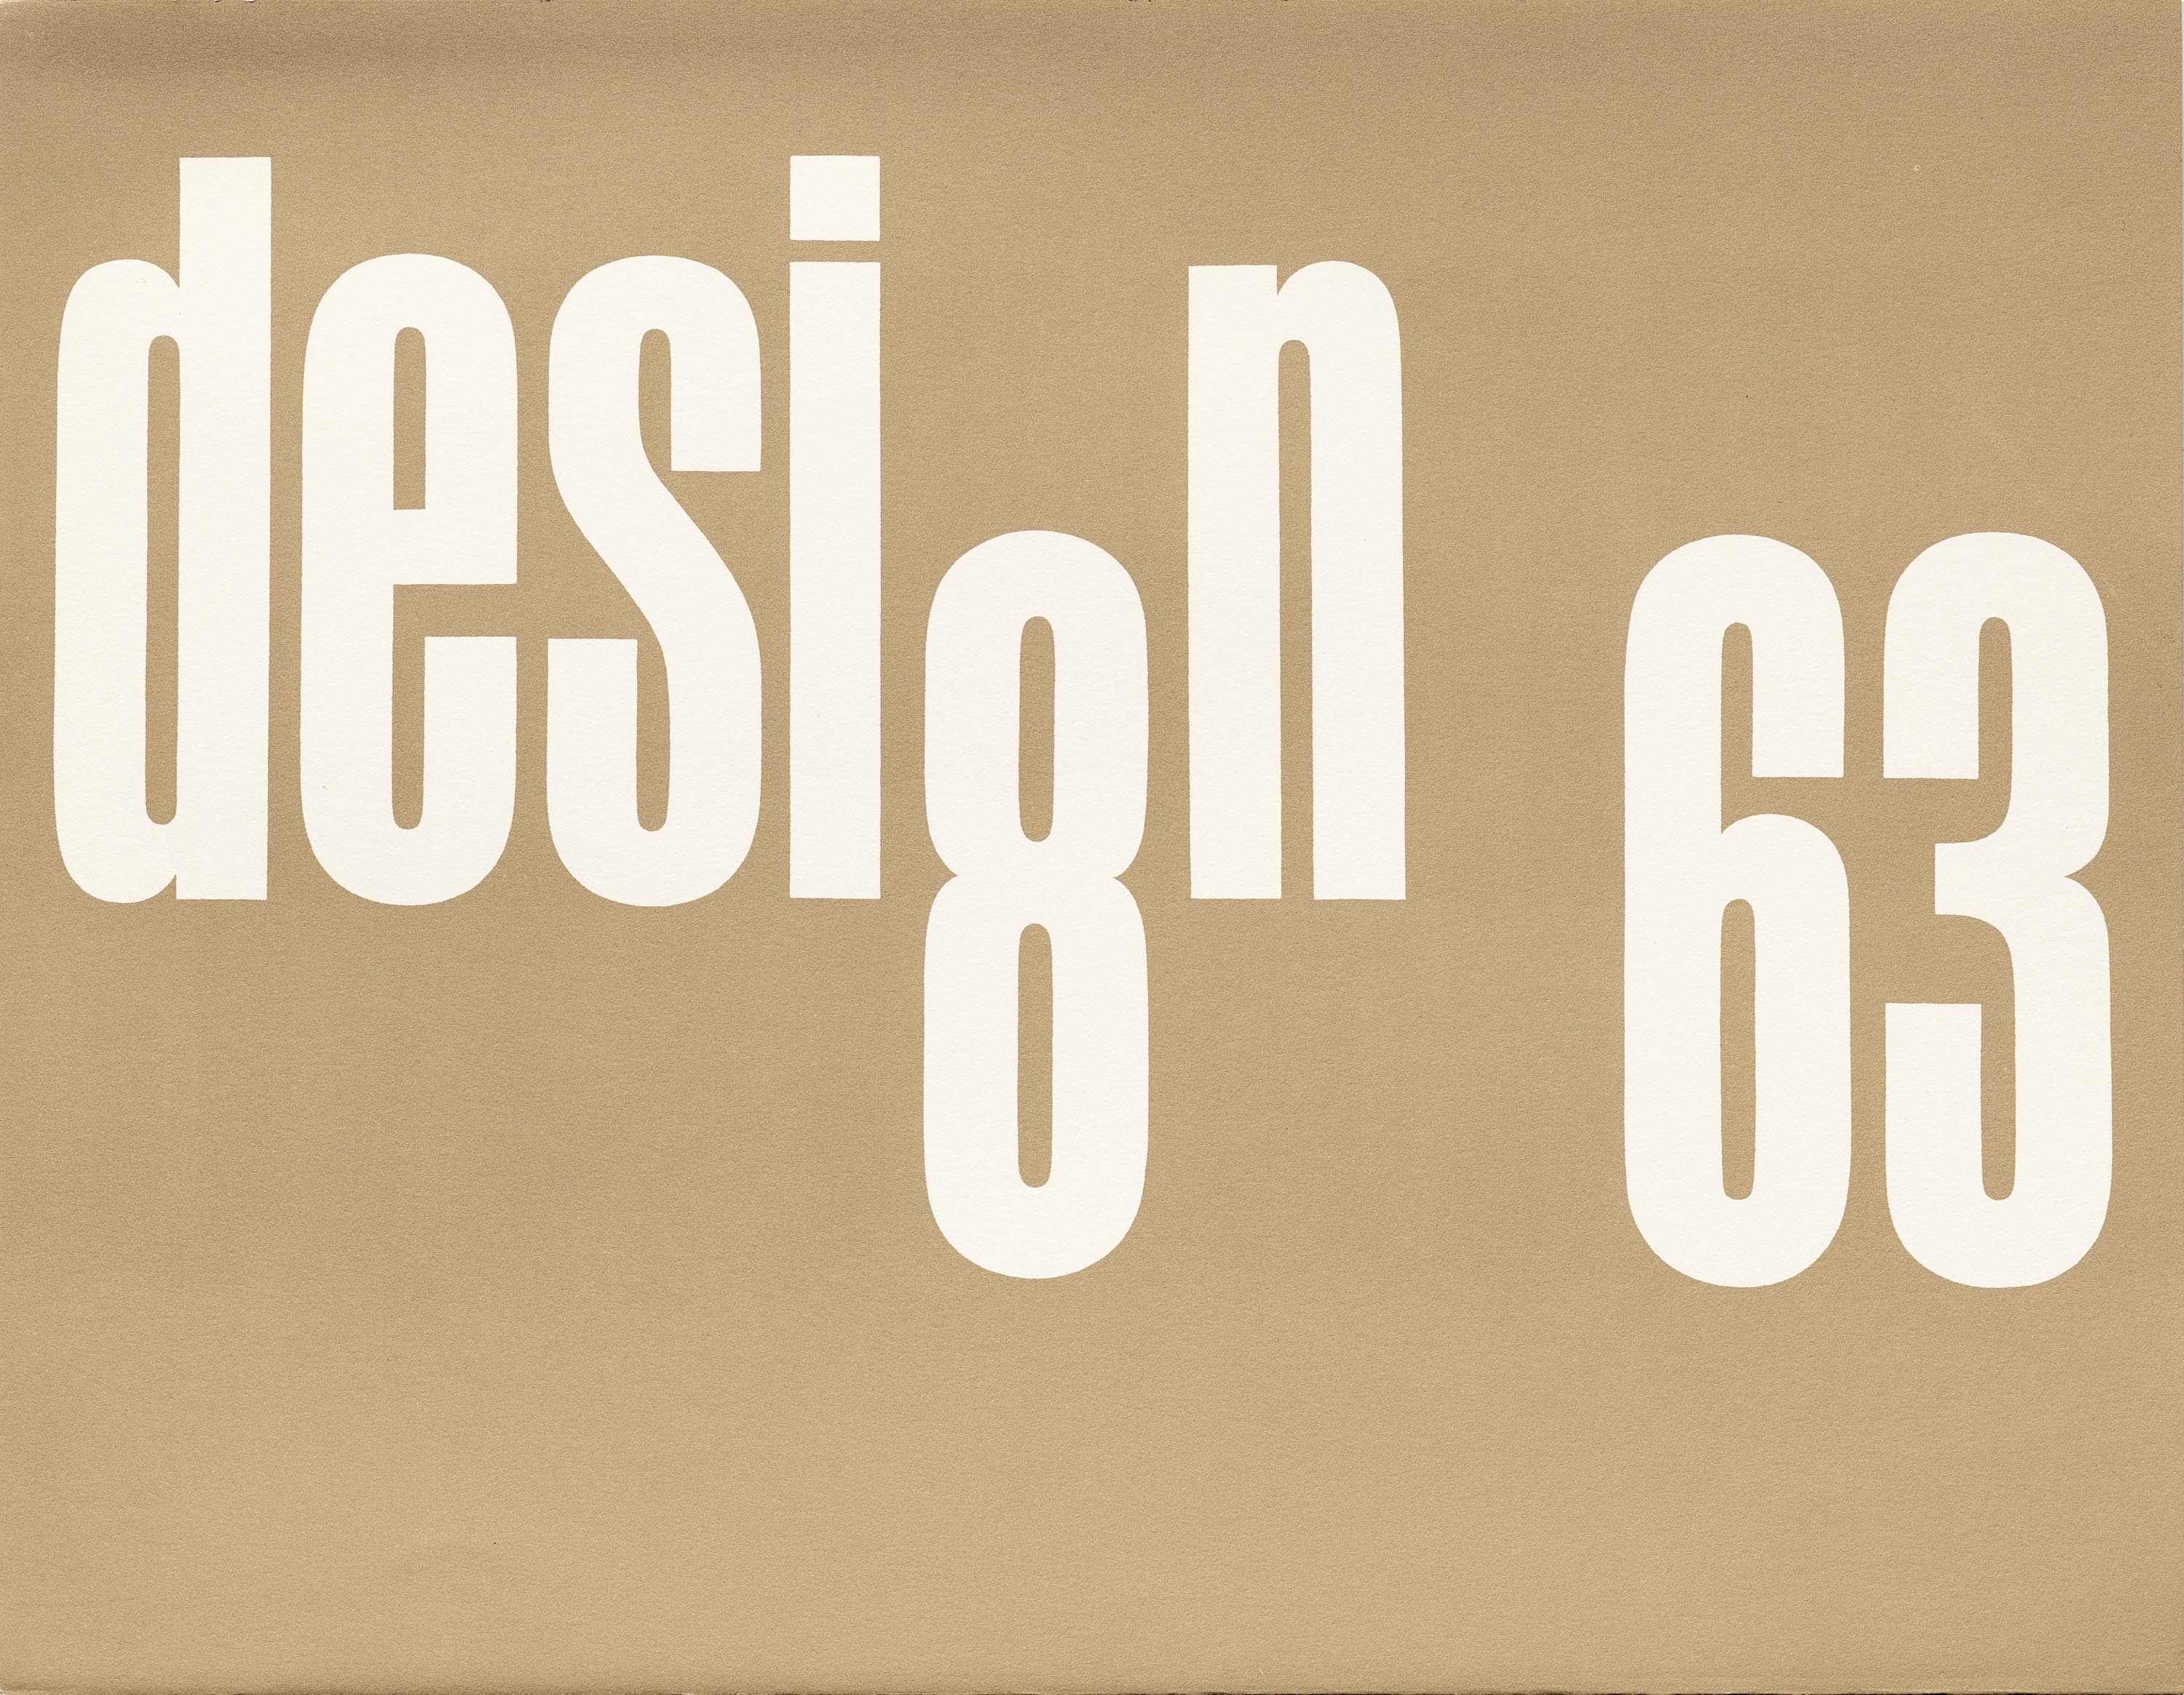 Un manifesto realizzato da Paul Rand nel 1963 per una conferenza sul Design